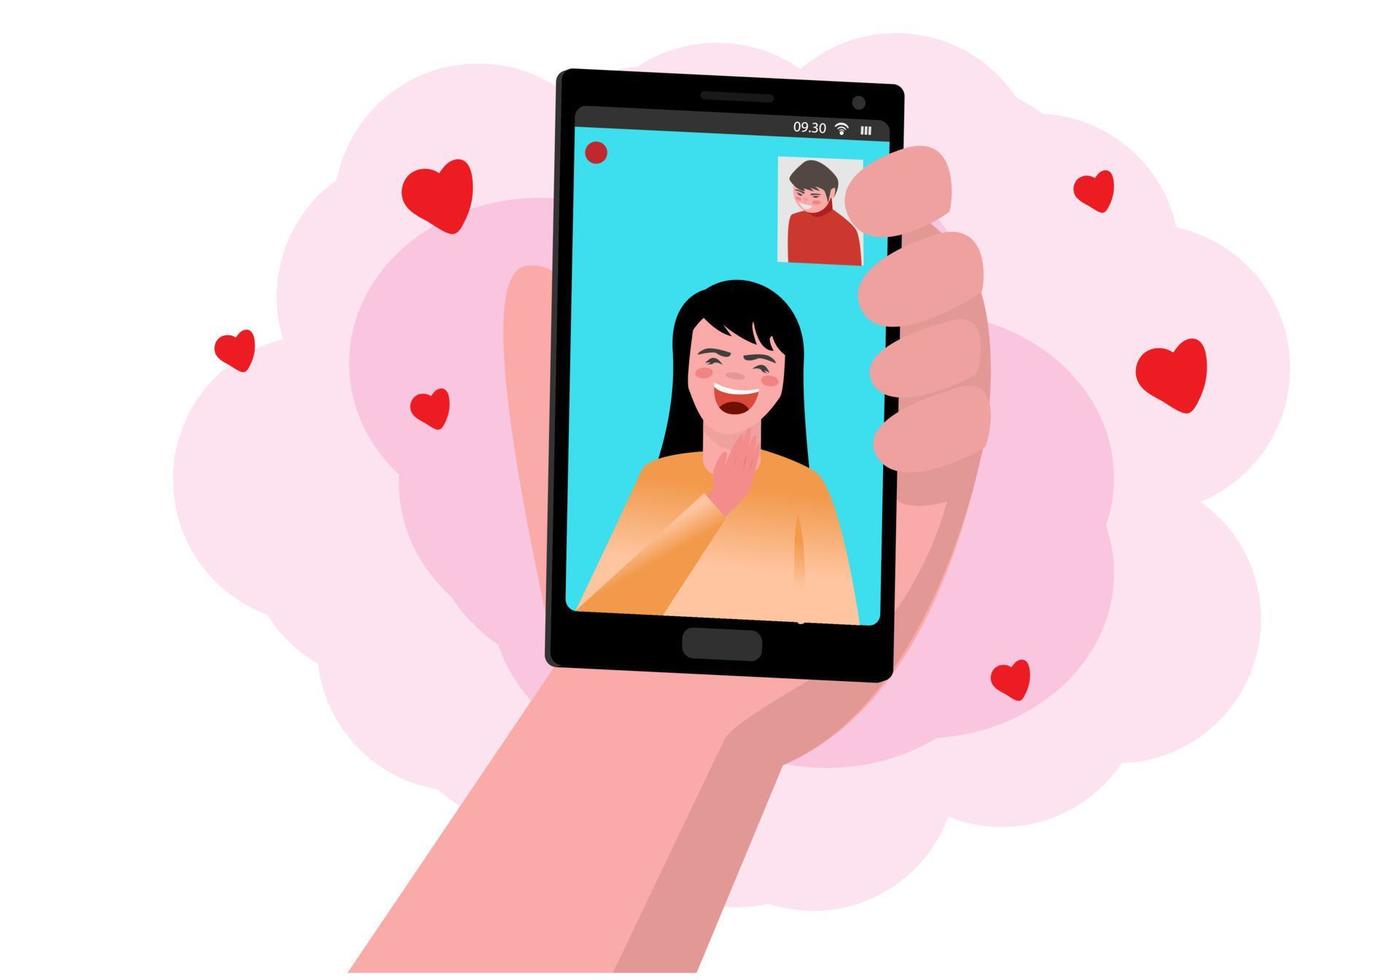 Machen Sie Videoanrufe mit Ihren Lieben über Ihr Smartphone. das konzept der fernliebe durch technologie vektor